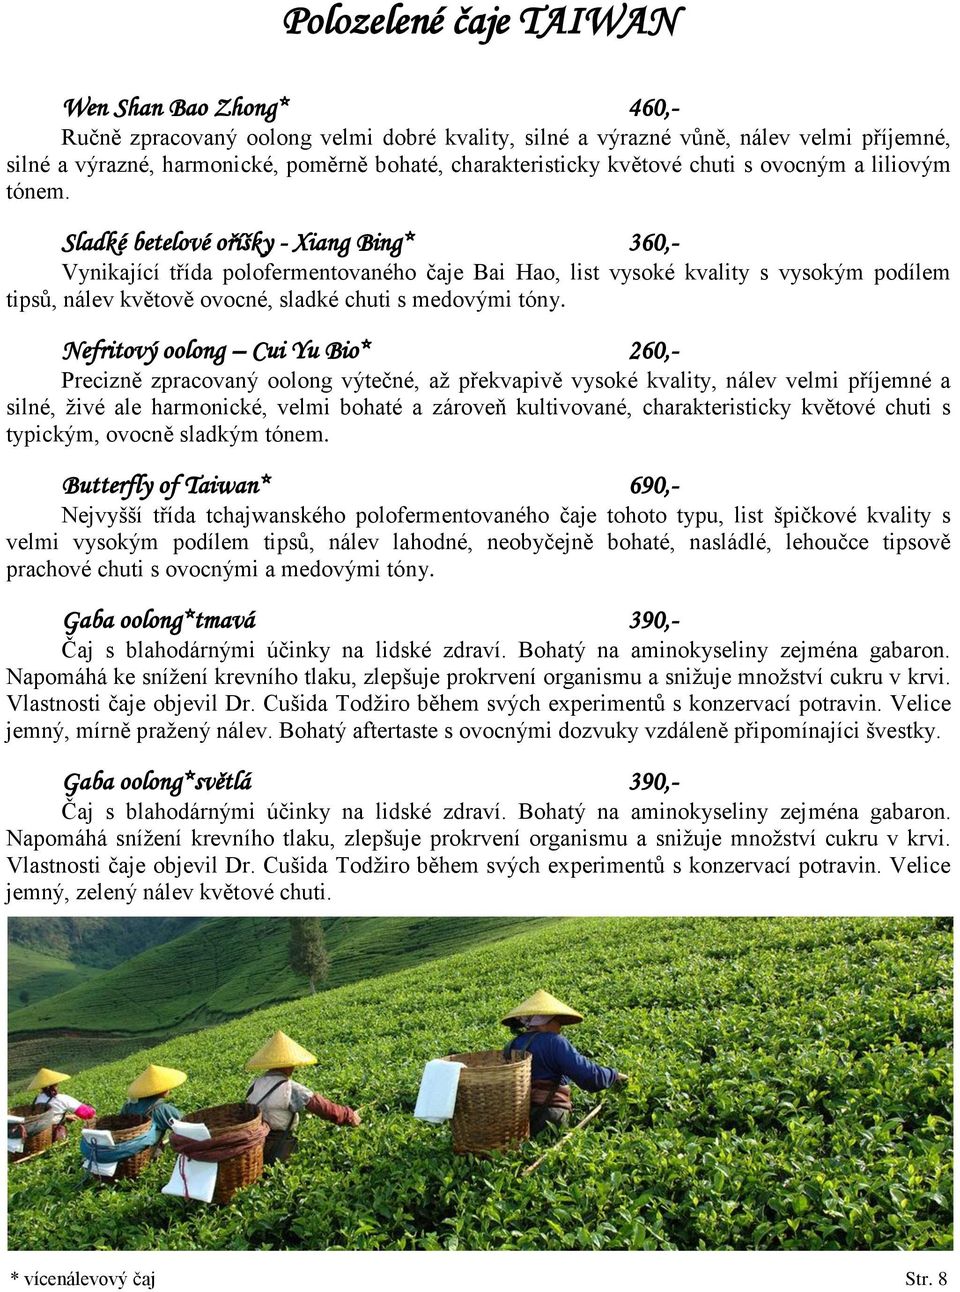 Sladké betelové oříšky - Xiang Bing* 360,- Vynikající třída polofermentovaného čaje Bai Hao, list vysoké kvality s vysokým podílem tipsů, nálev květově ovocné, sladké chuti s medovými tóny.